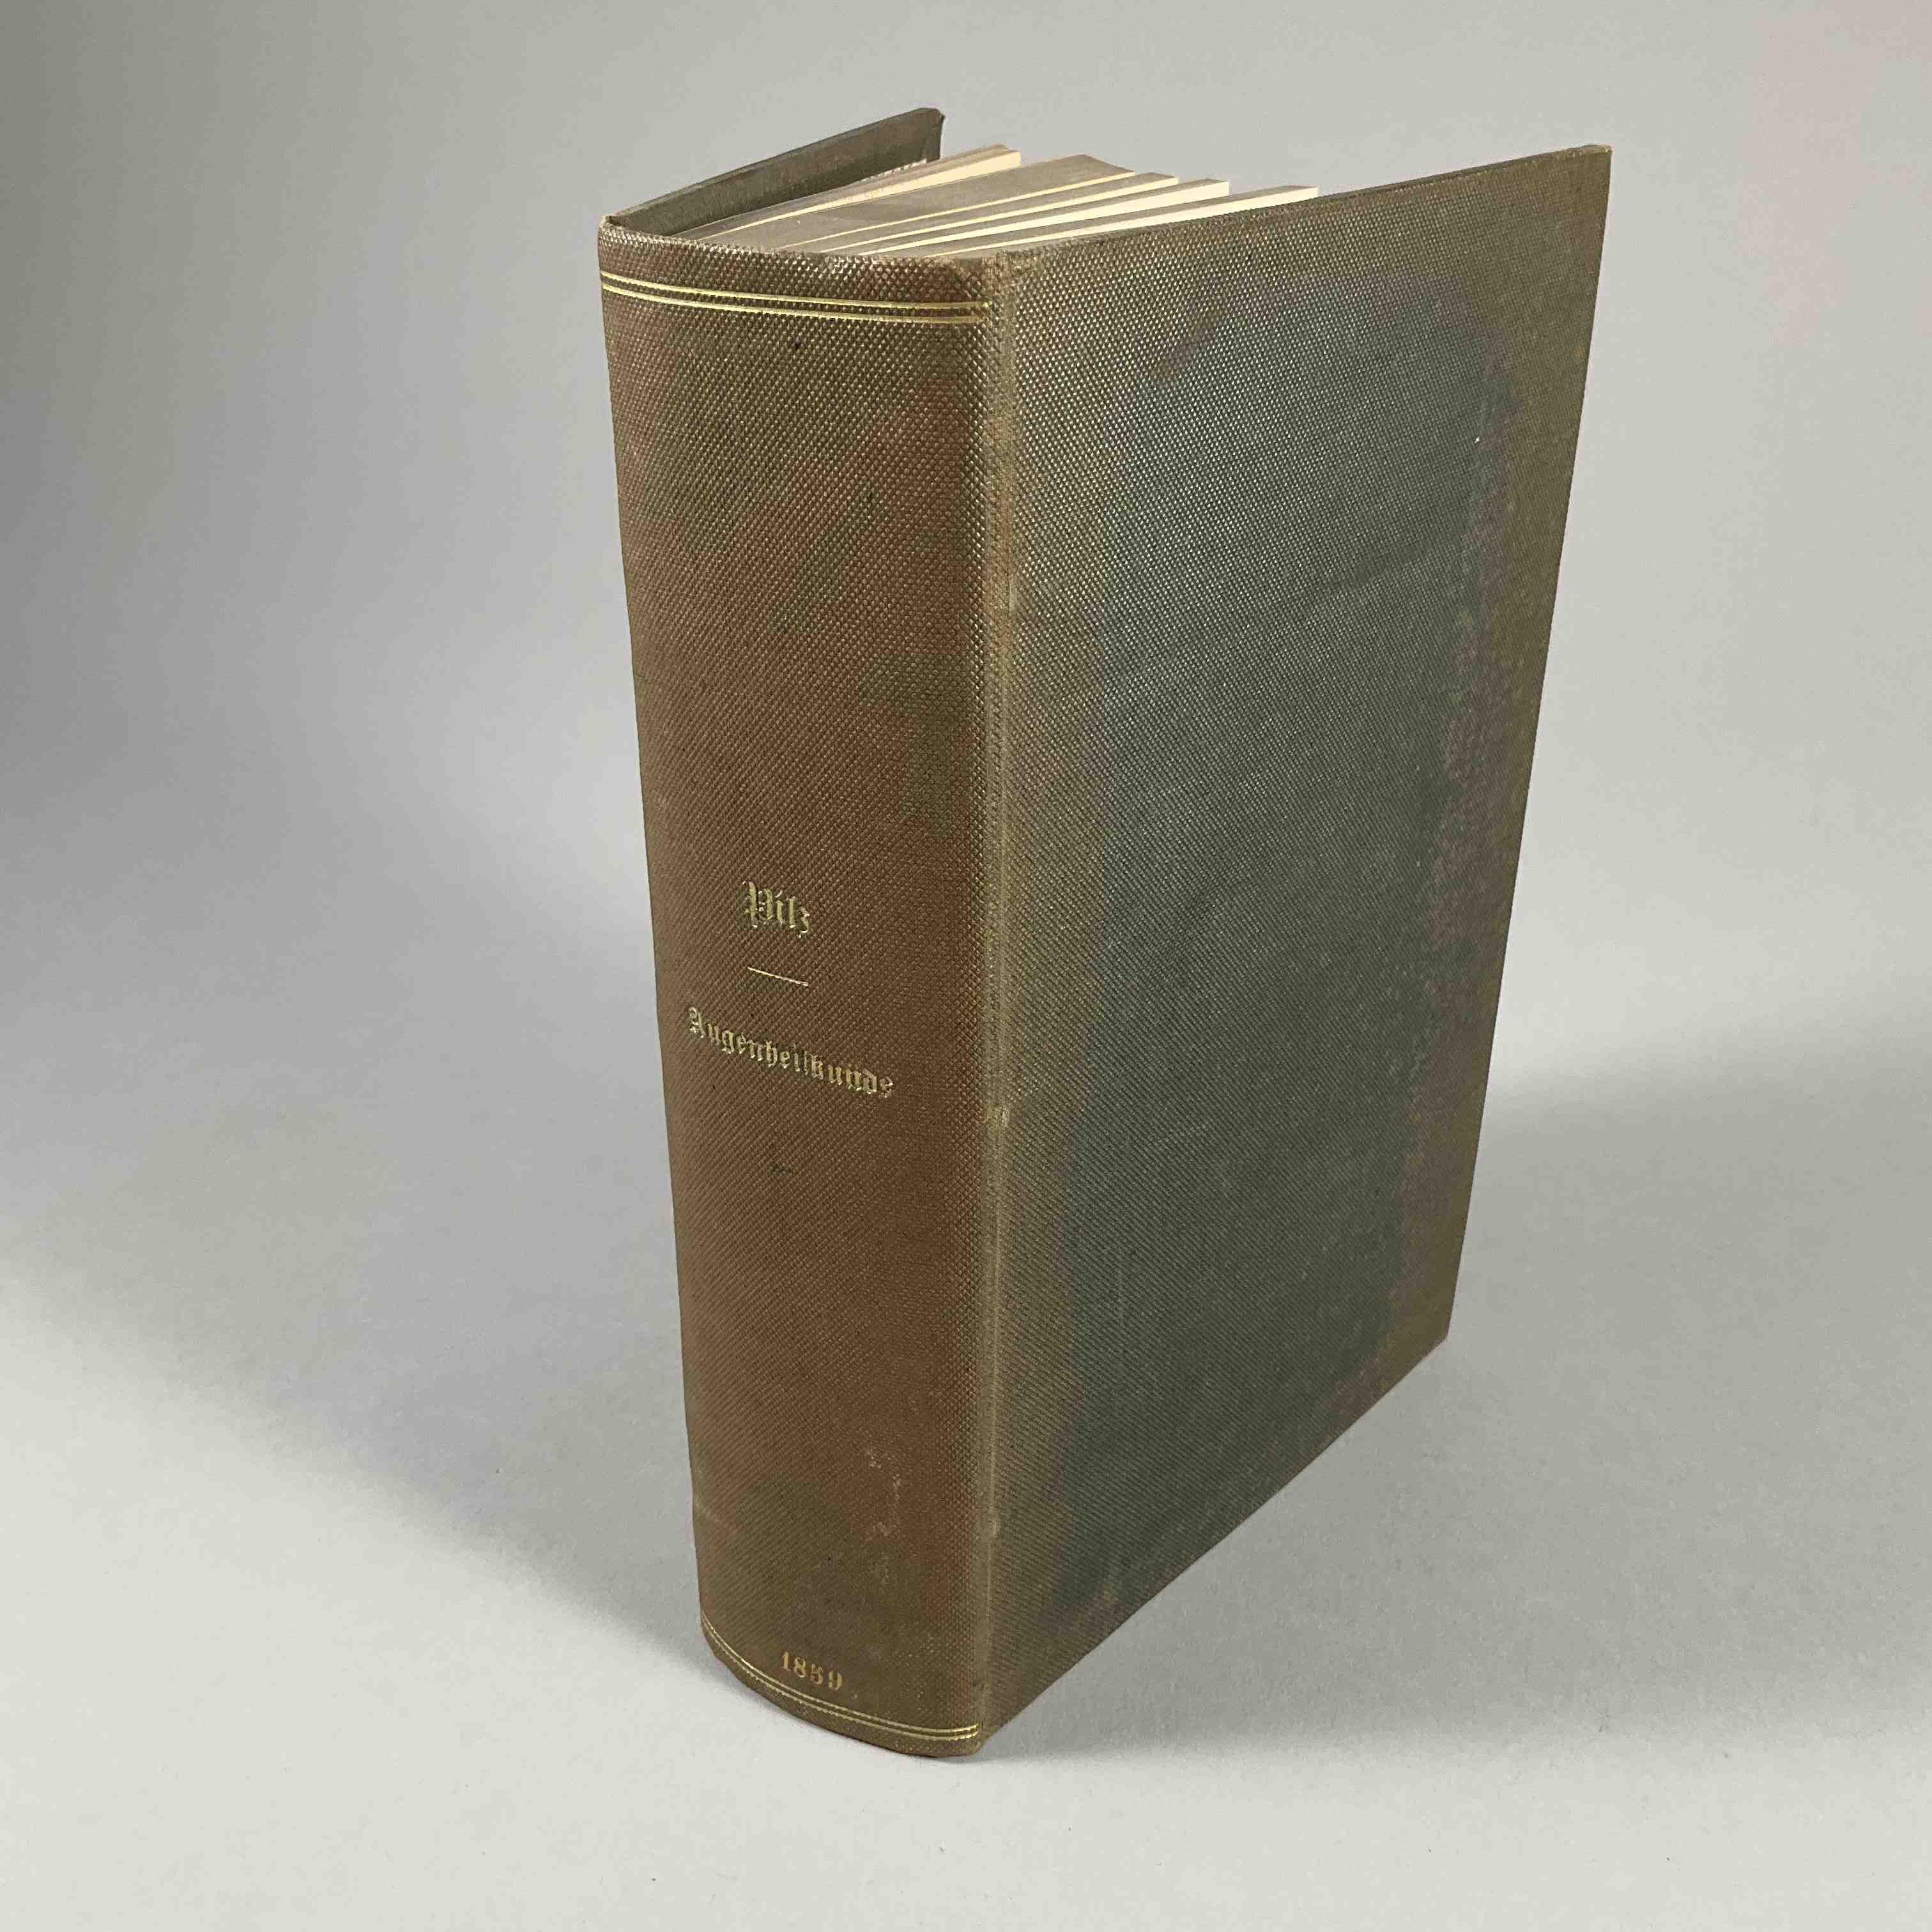 [Ophtalmologie] Dr Josef Pilz, Lehrbuch der augenheilkunde.
Prag, Karl André, 1859....